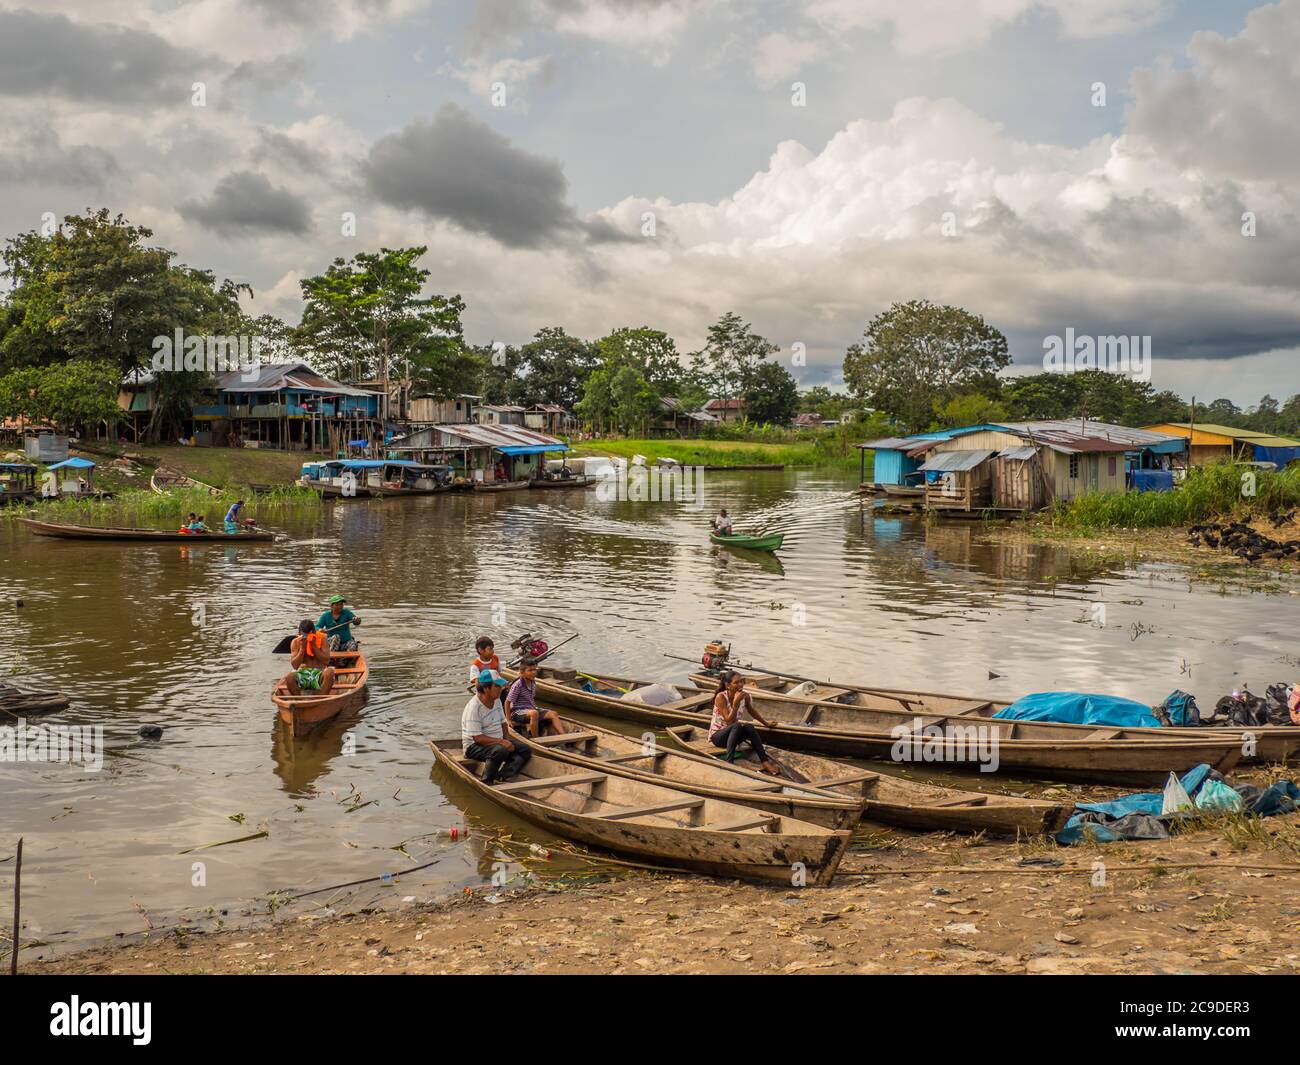 Leticia, Amazonas, Colombie, 29 novembre 2019 : petits canoës en bois dans le port de Leticia pendant la basse saison des eaux. Ils sont appelés 'peque peque' be Banque D'Images